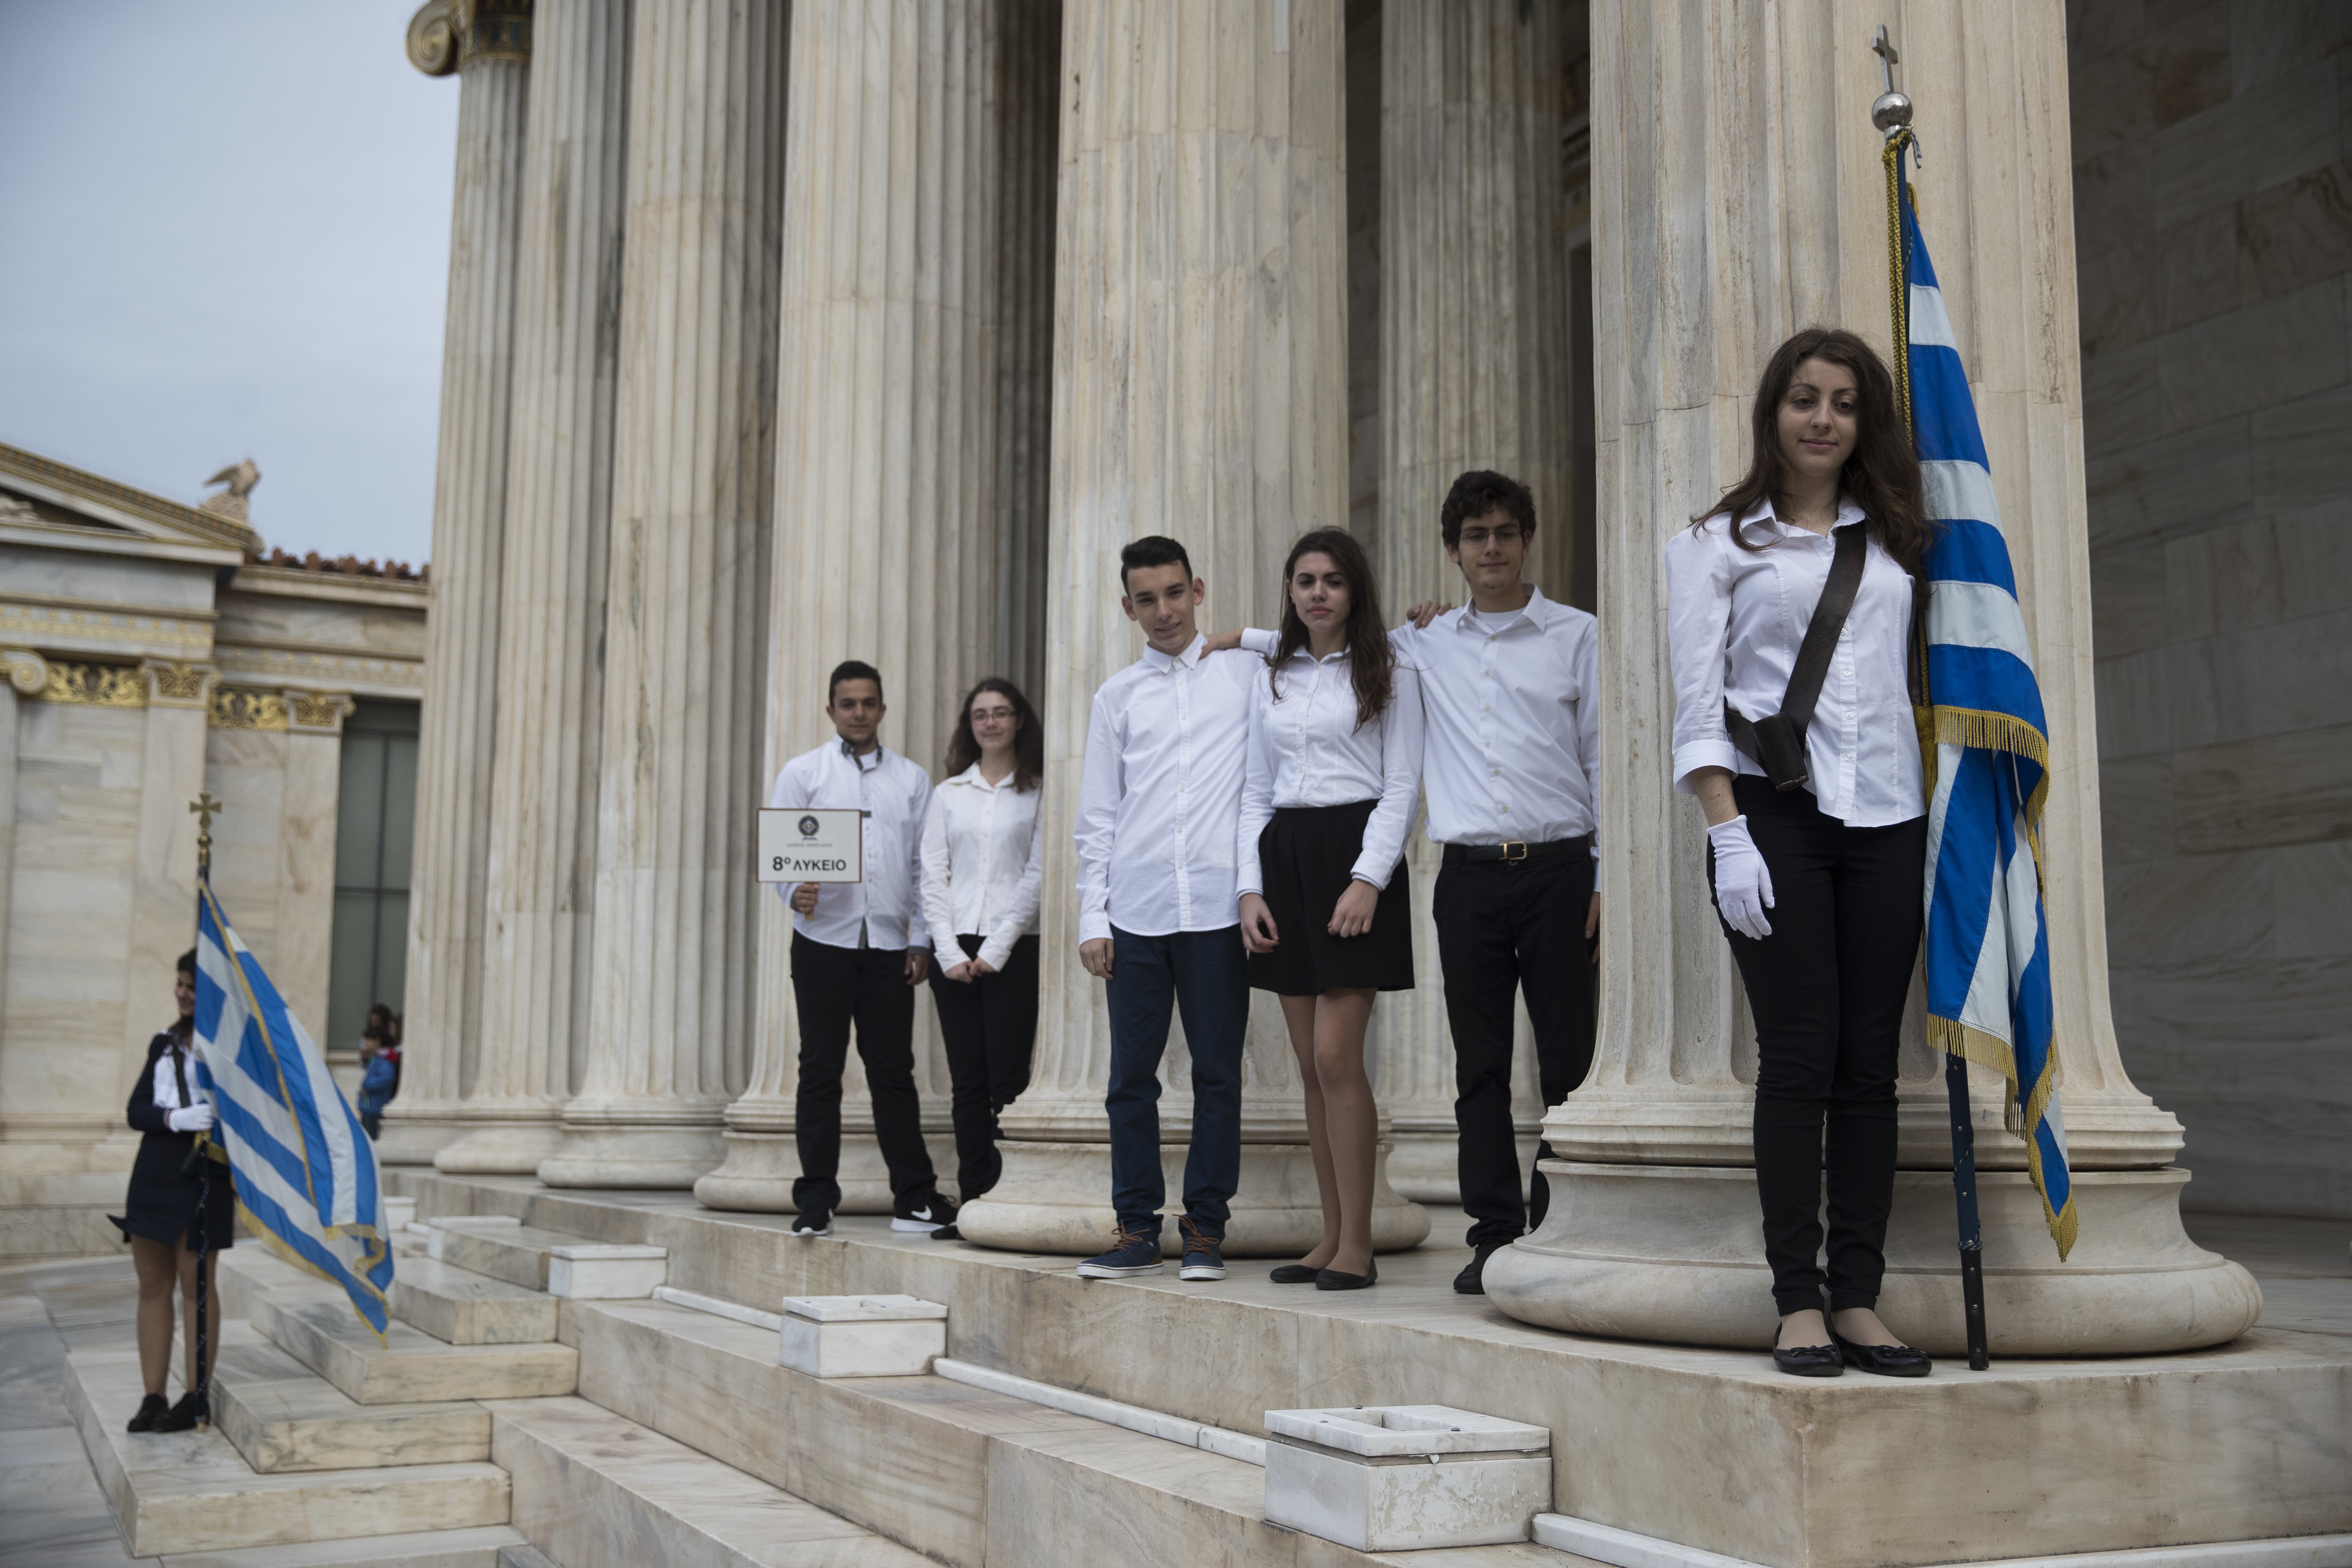 Студенти с националния флаг пред сградата на Академията в Атина